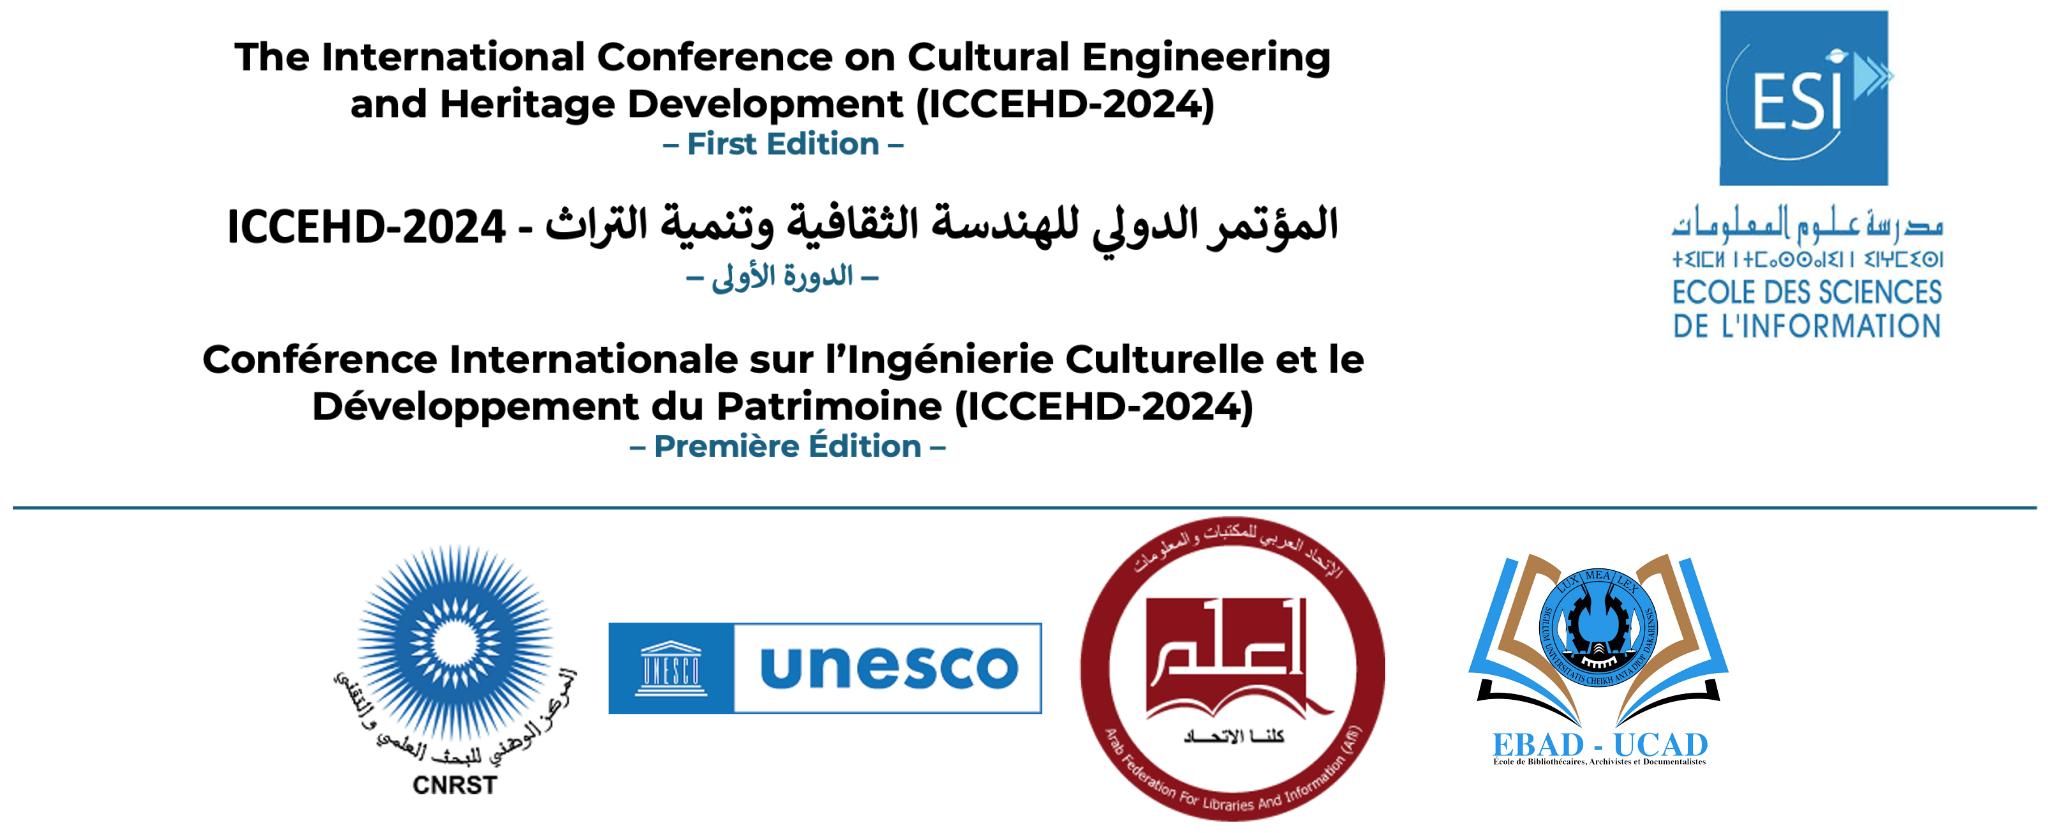 المؤتمر الدولي للهندسة الثقافية وتنمية التراث – الدورة الأولى (ICCEHD-2024)